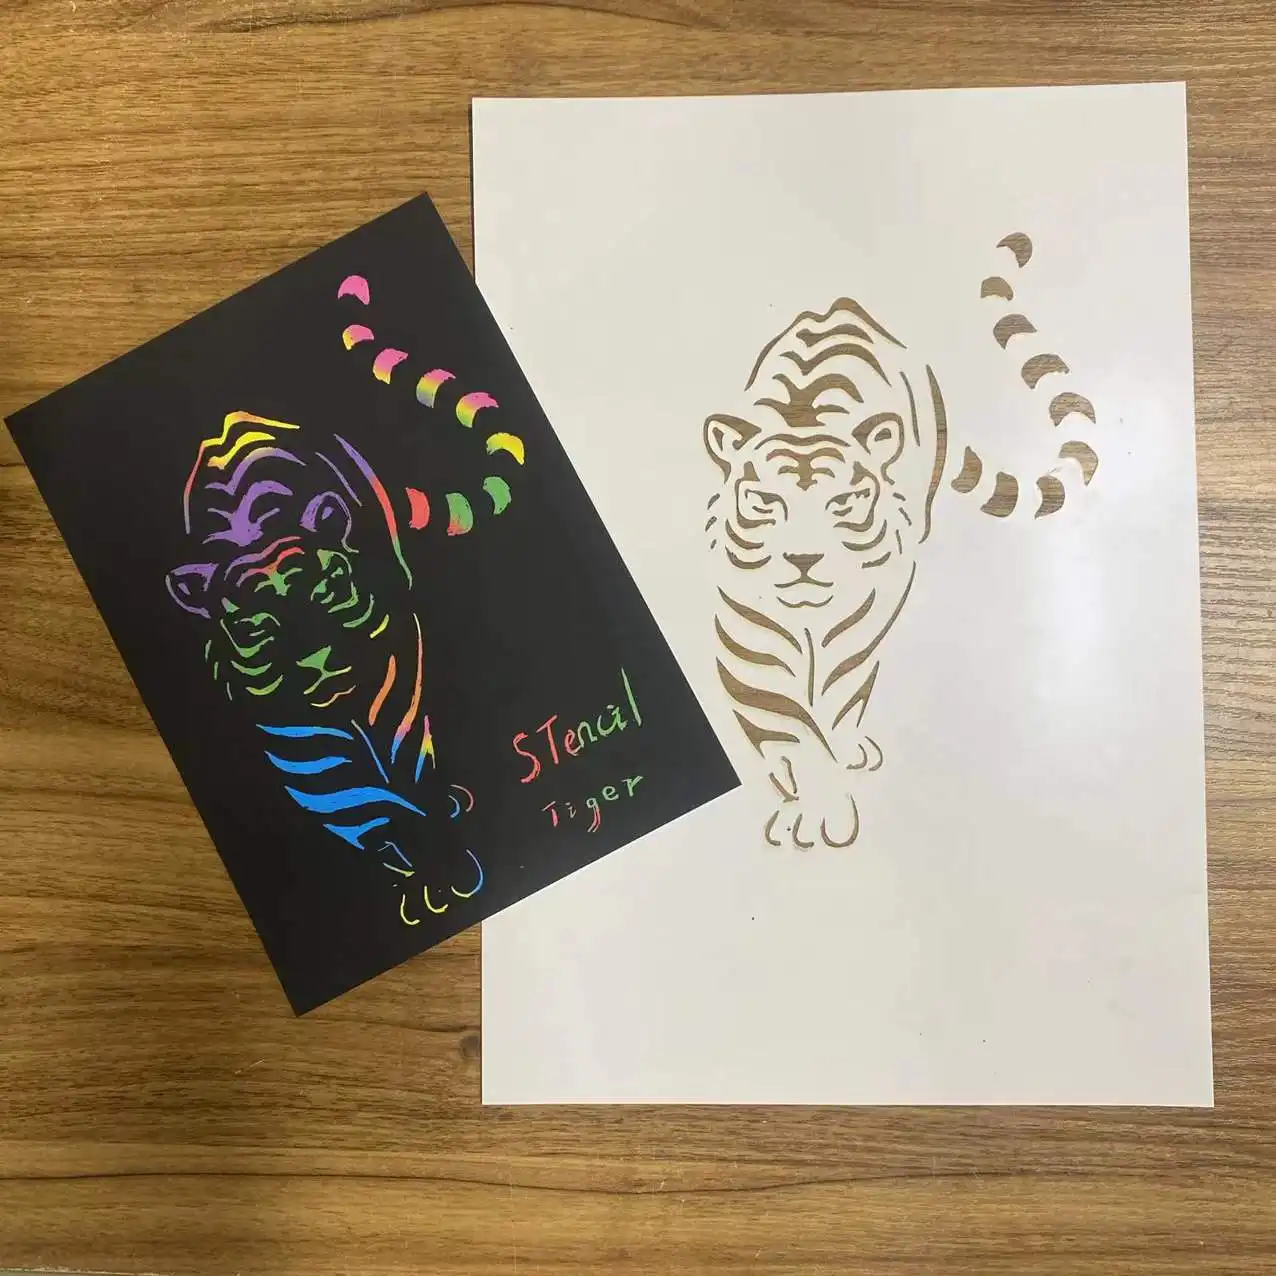 Tiger Hewan Stensil Goresan Kertas Templat Gambar untuk Anak Pendidikan Menggambar Seni Permainan Diy Buatan Tangan Lukisan Gambar